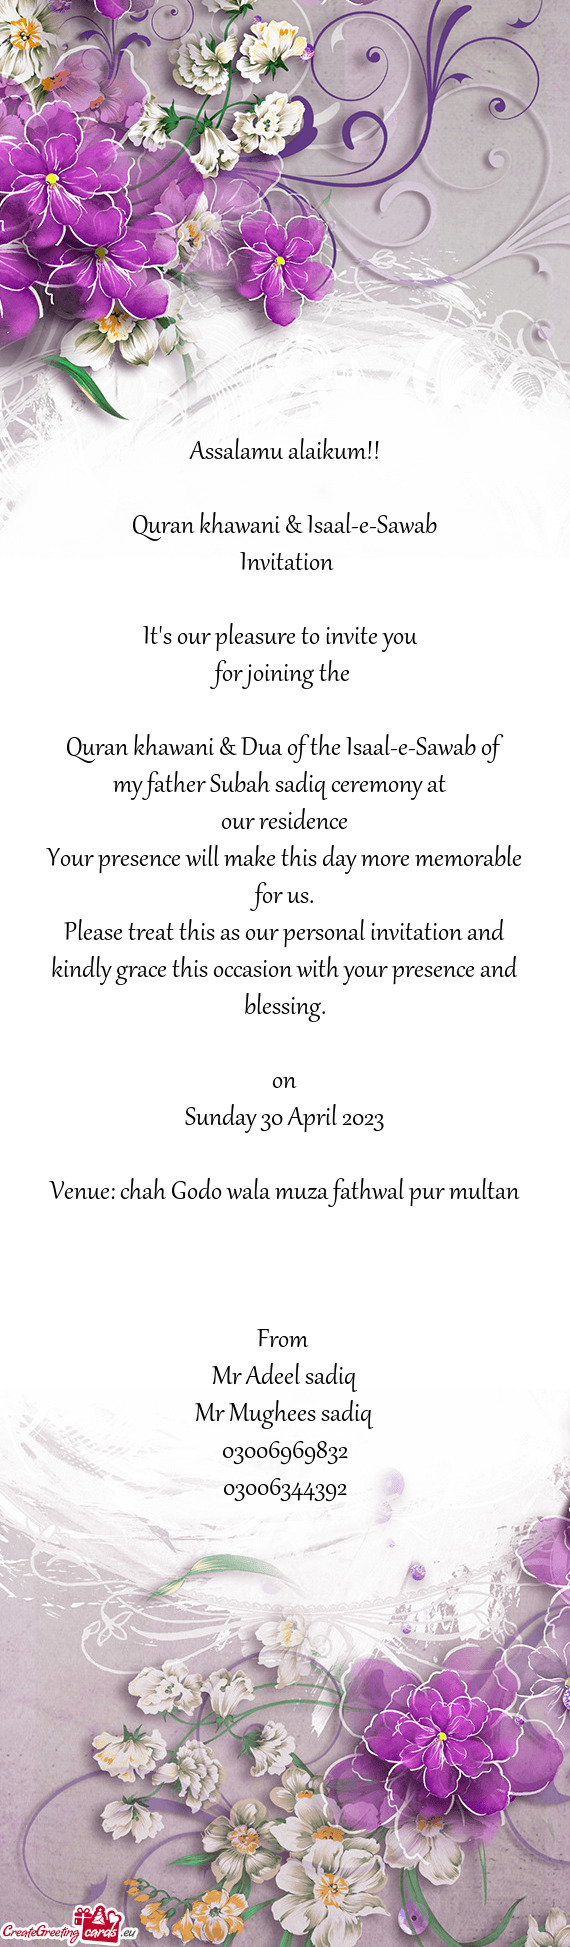 Quran khawani & Dua of the Isaal-e-Sawab of